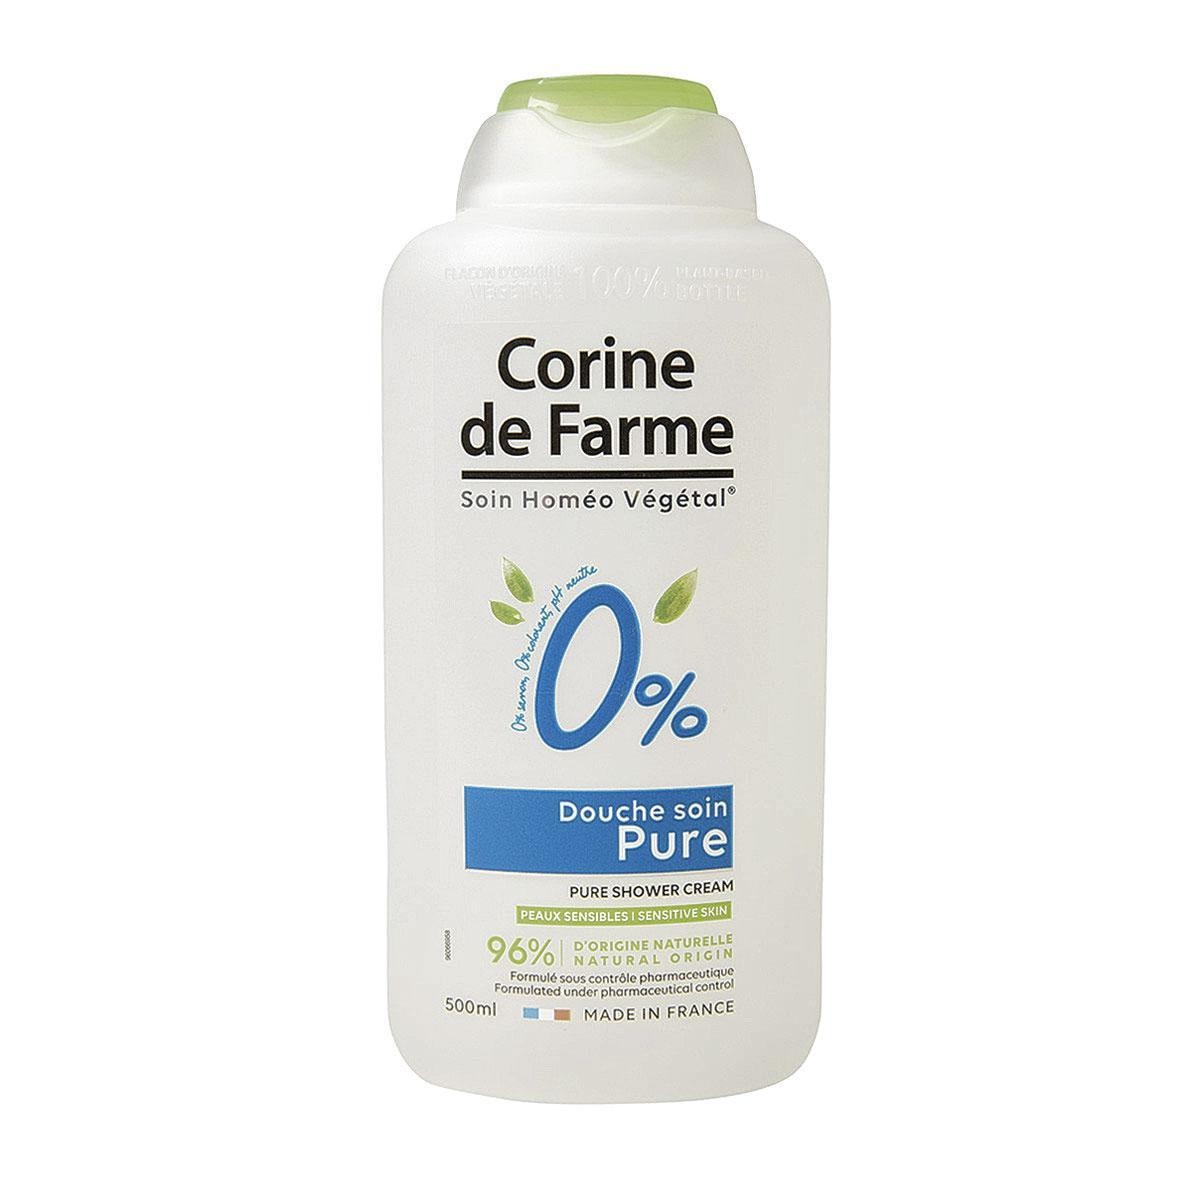 Clean beauty voor een zacht prijsje: vegan douchegel Soin Pure 0% van Corine de Farme verzacht je huid en reinigt op milde wijze, 4,15 euro voor 500 ml, corinedefarme.be